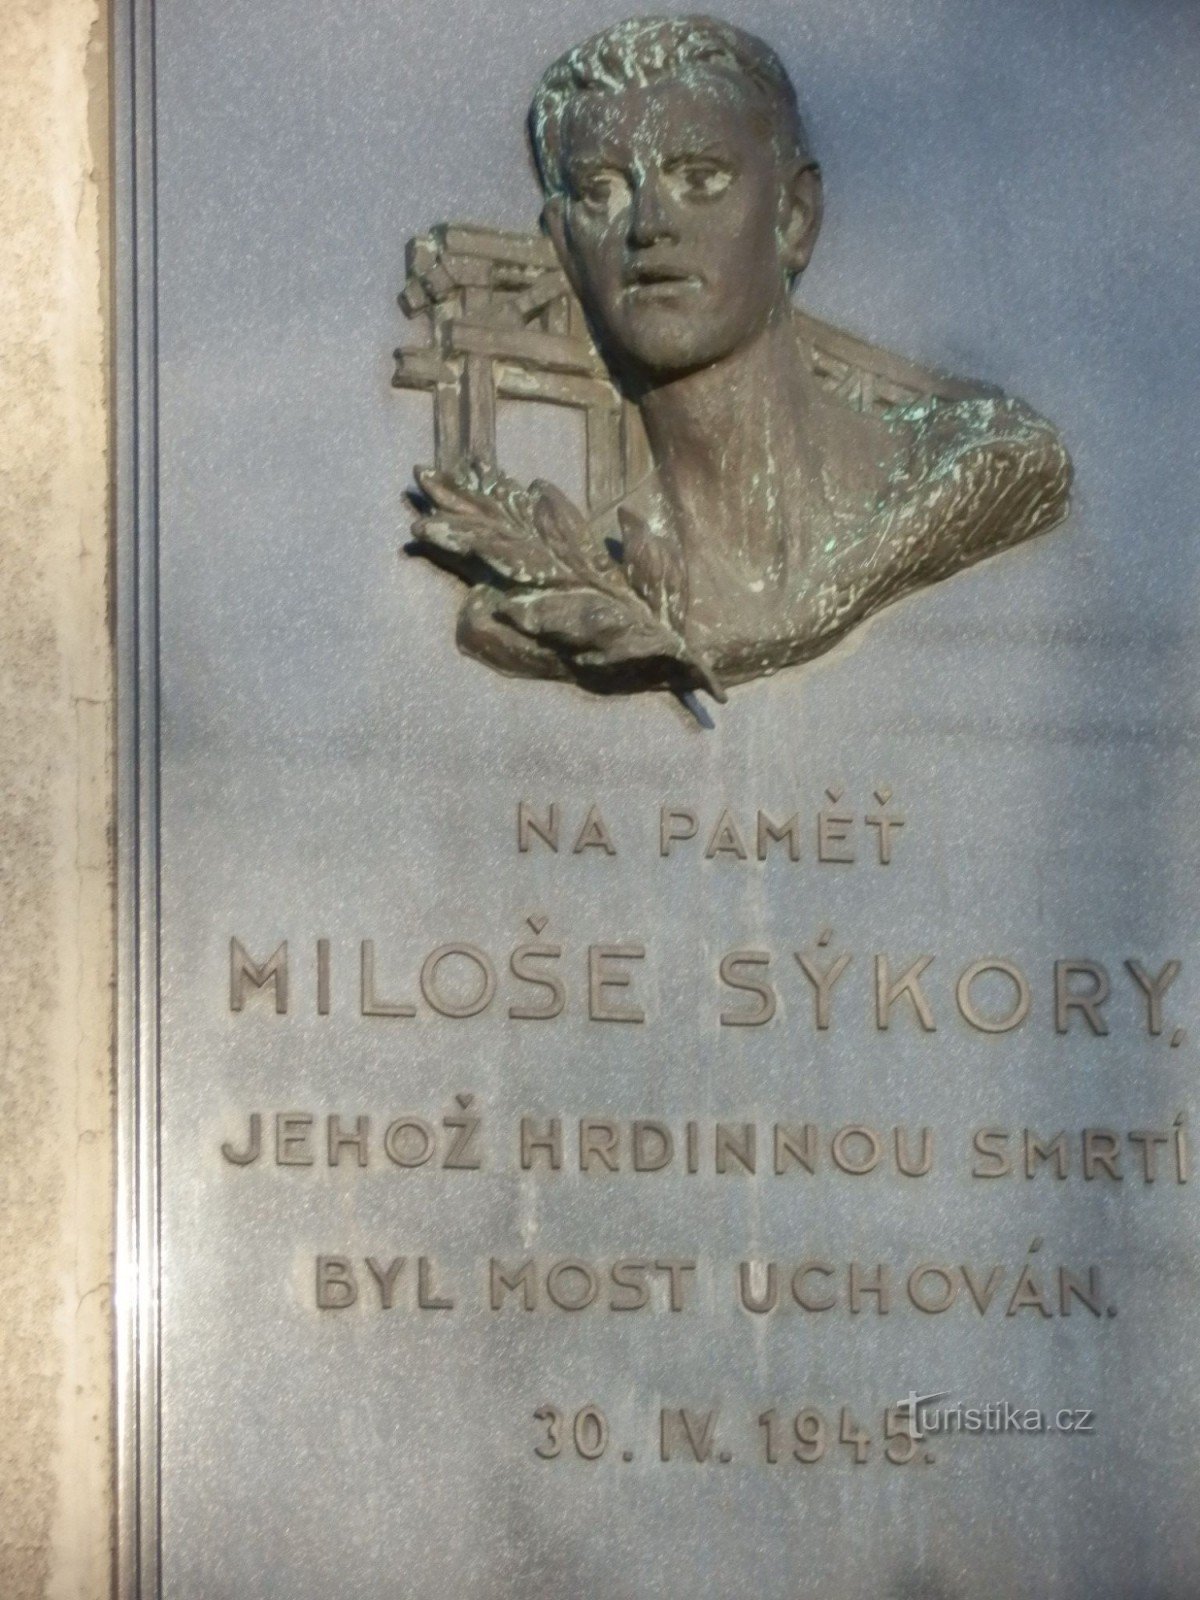 Пам'ятник Мілошу Сикорі - рятівнику мосту